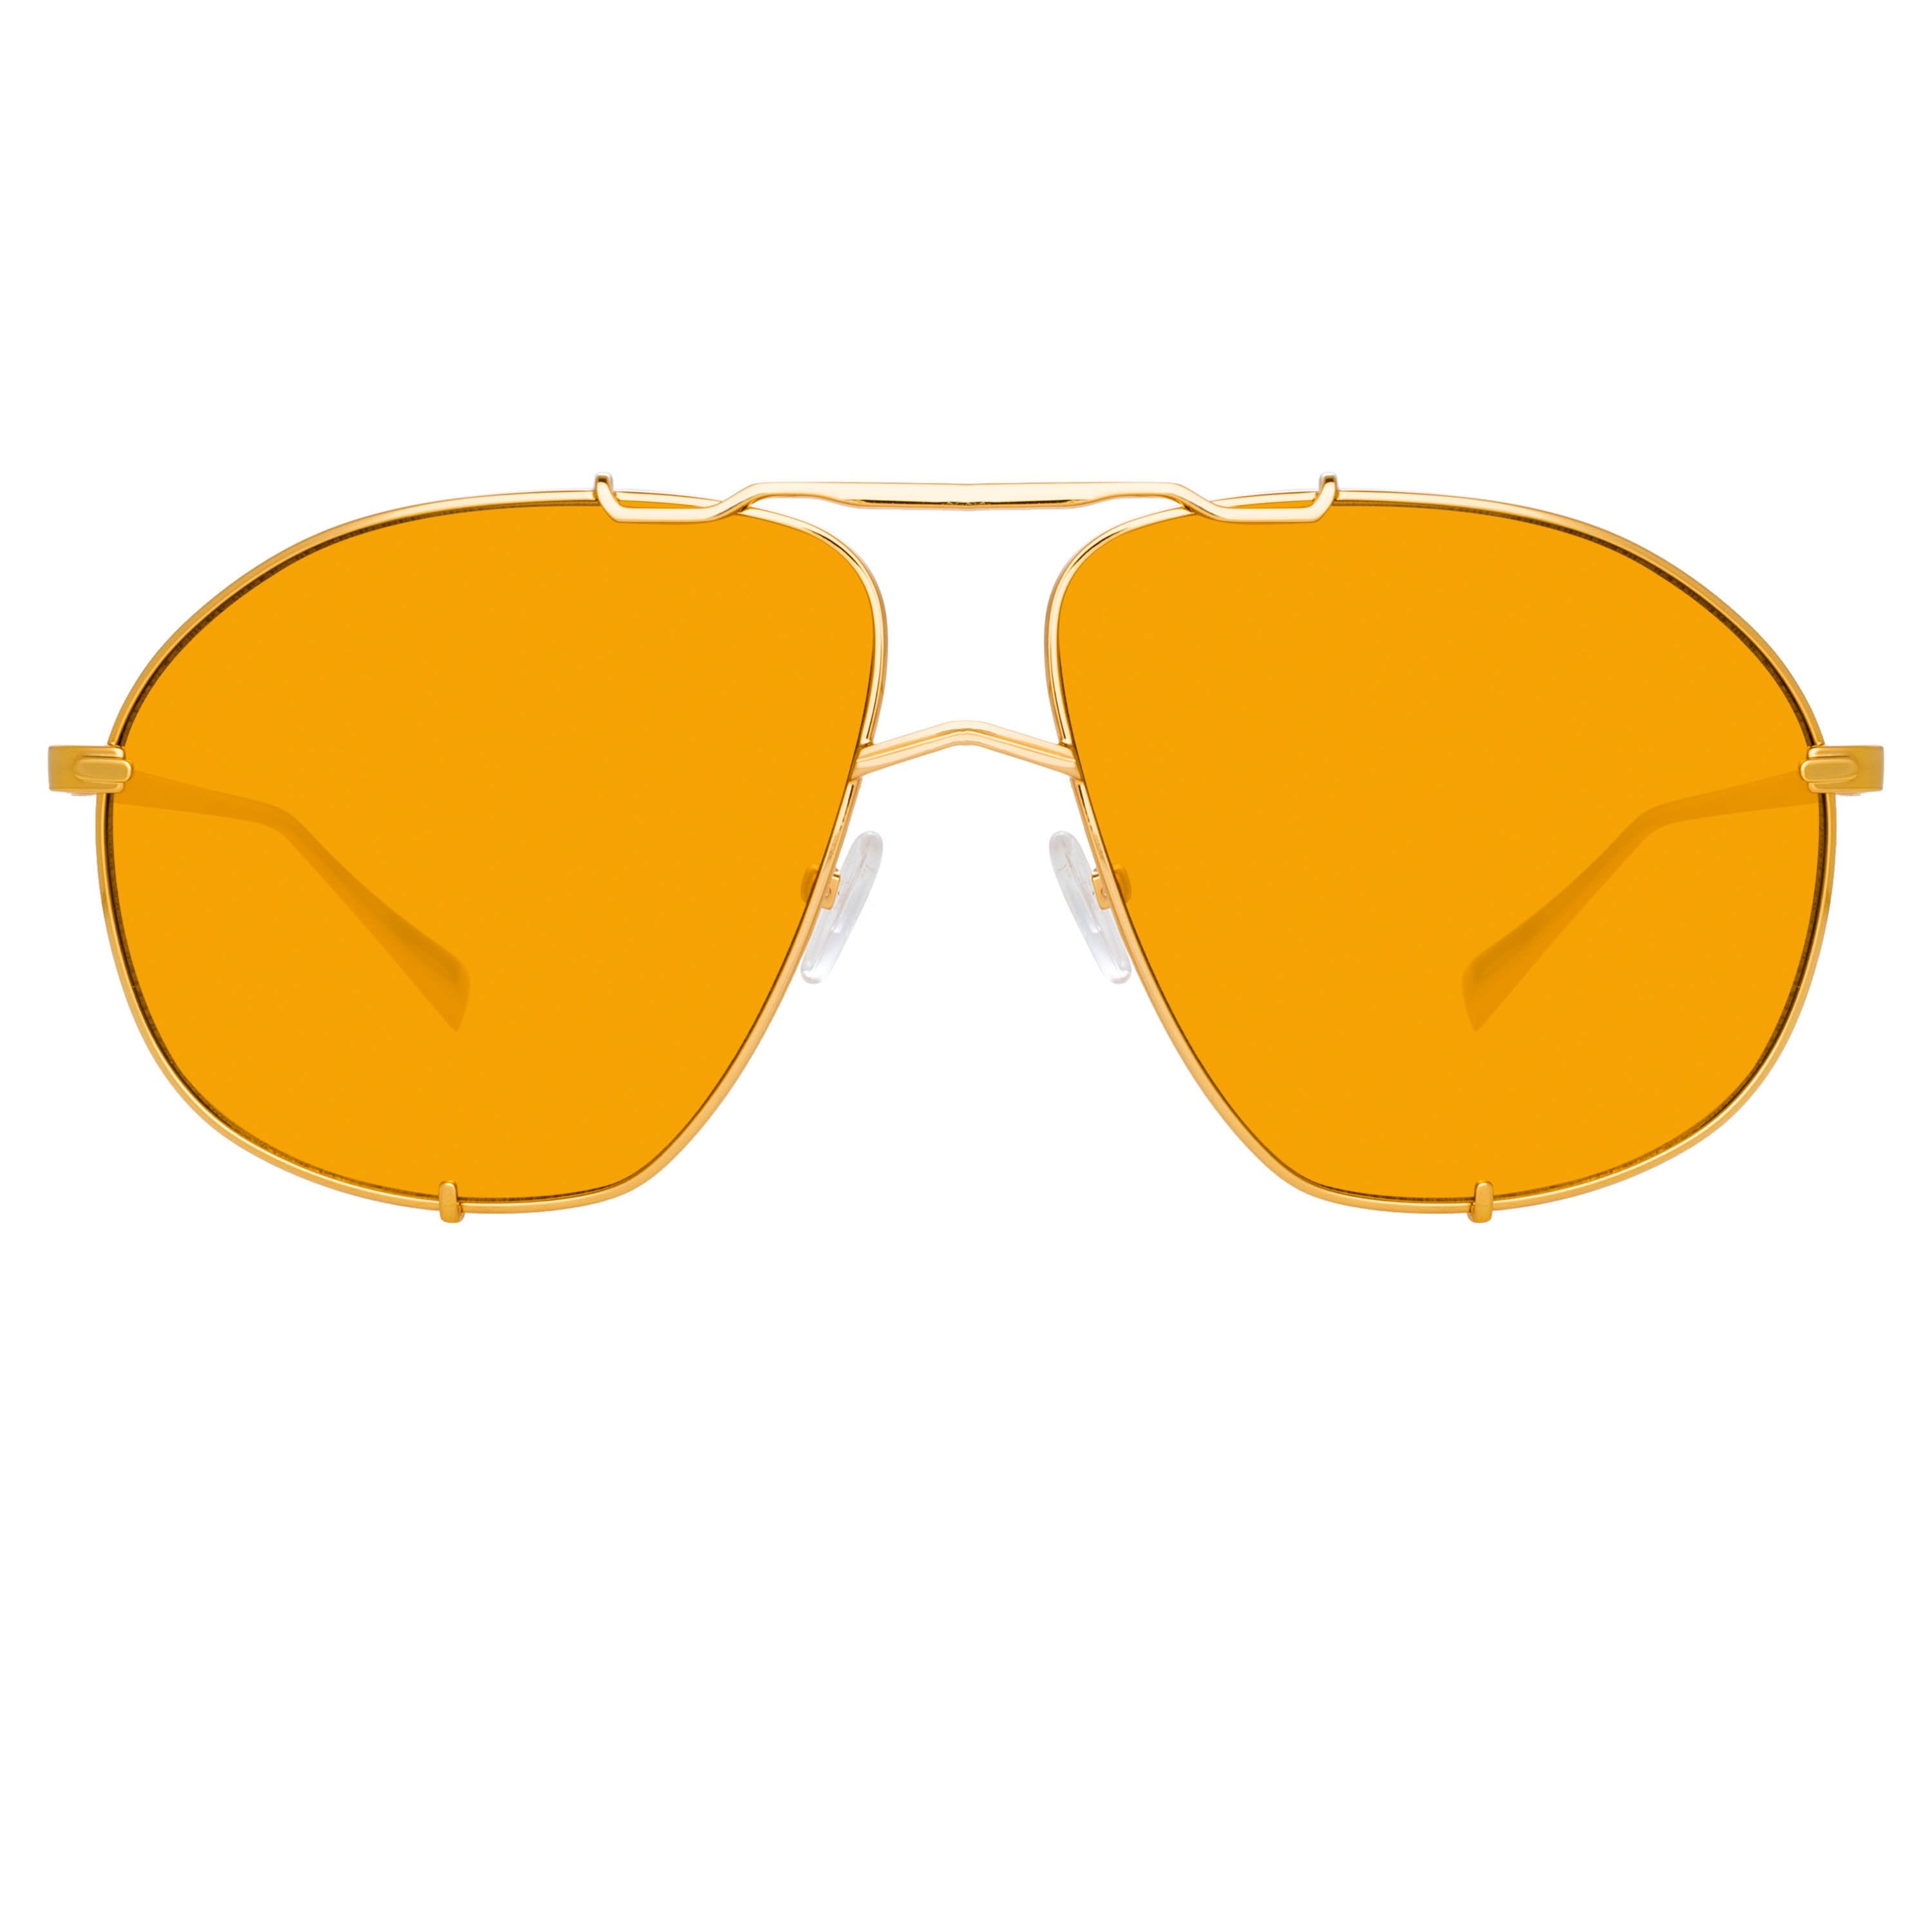 Color_ATTICO13C2SUN - The Attico Mina Oversized Sunglasses in Yellow Gold and Orange